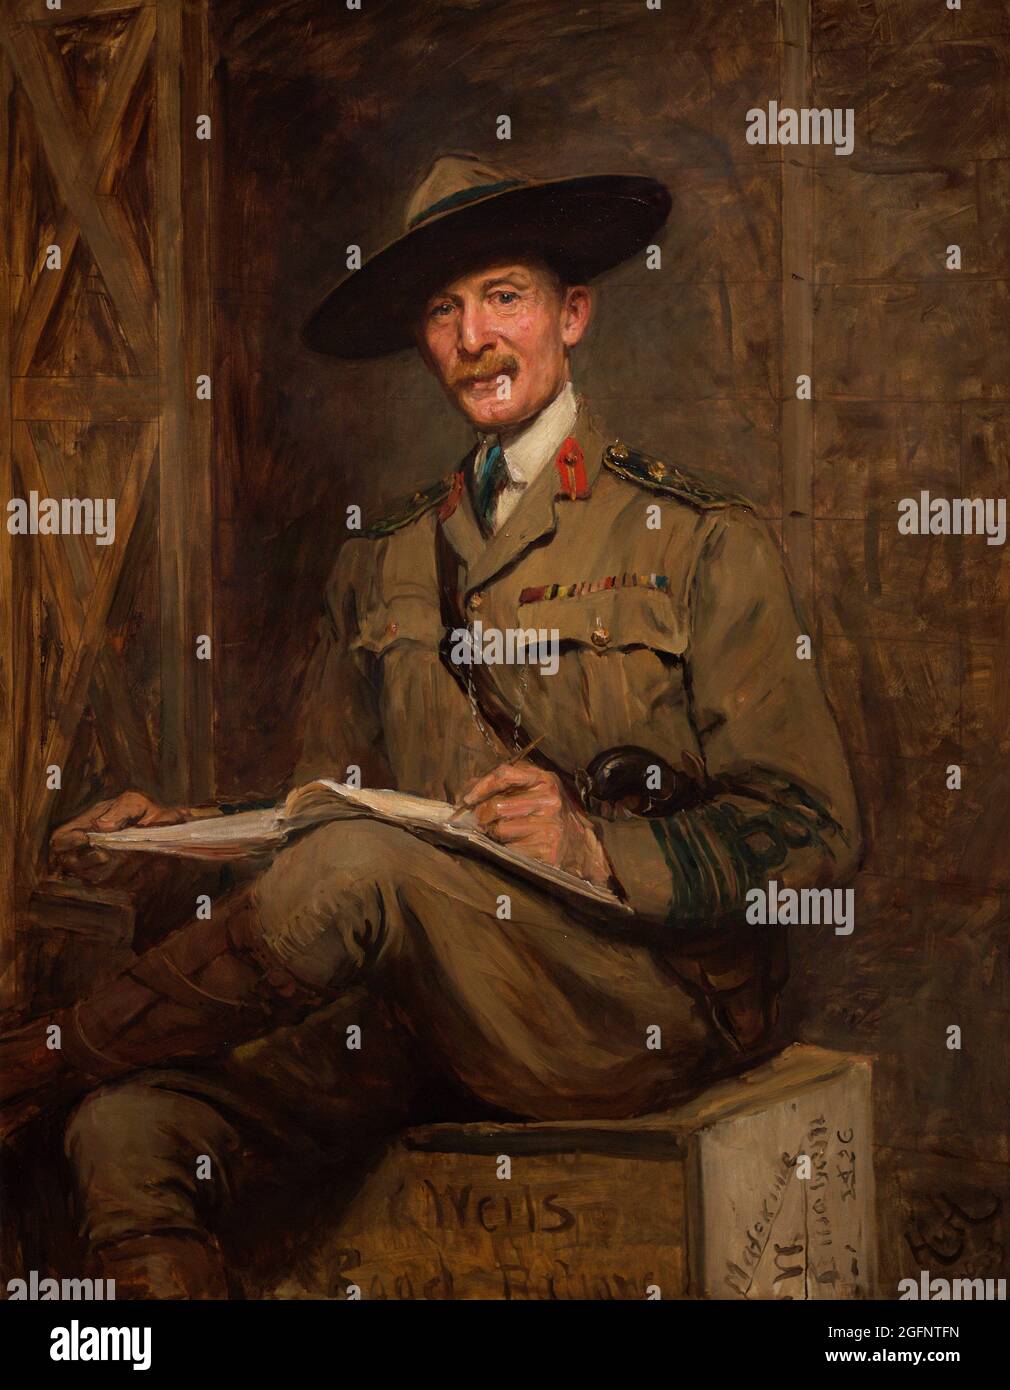 Robert Baden-Powell, 1. Baron Baden-Powell (1857-1941). Britischer Generalmajor und Schriftsteller. Gründerin der Pfadfinder- und Mädchenführer. Porträt von Sir Hubert von Herkomer (1849-1914). Öl auf Leinwand (141,9 x 112,1 cm), 1903. National Portrait Gallery. London, England, Vereinigtes Königreich. Stockfoto